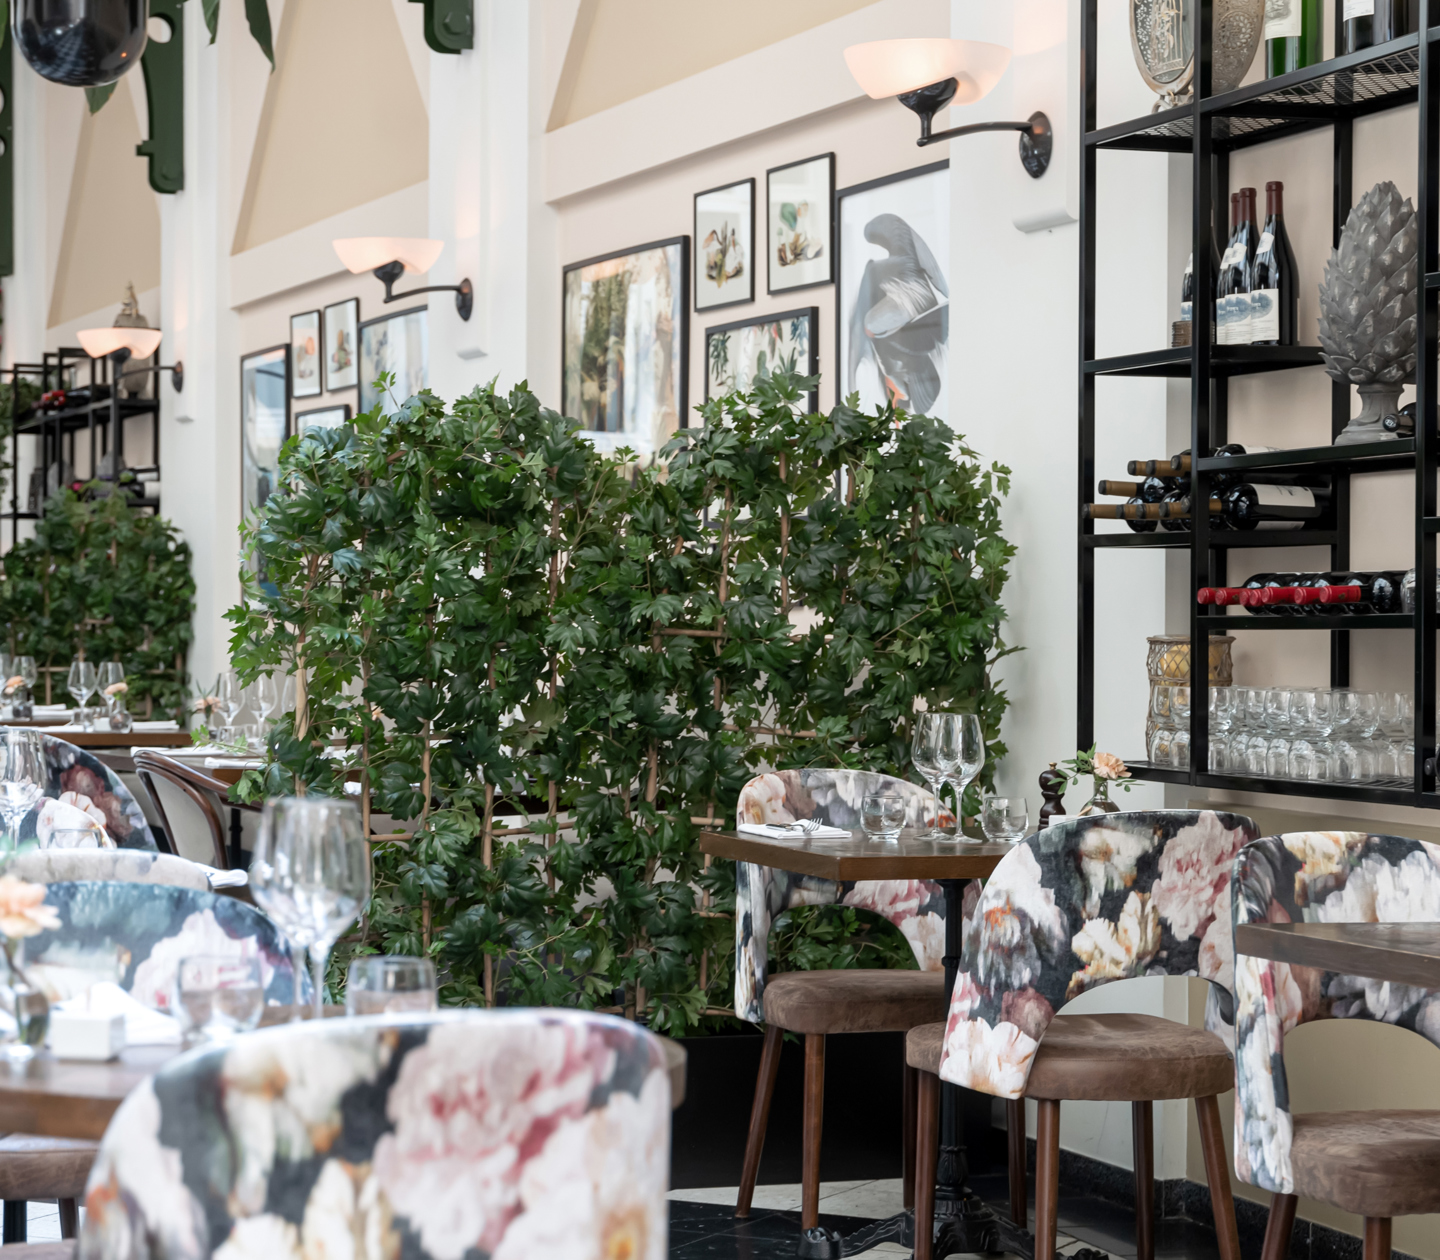 Elegant restaurangmiljö med dukade bord, växter, viner och tavlor